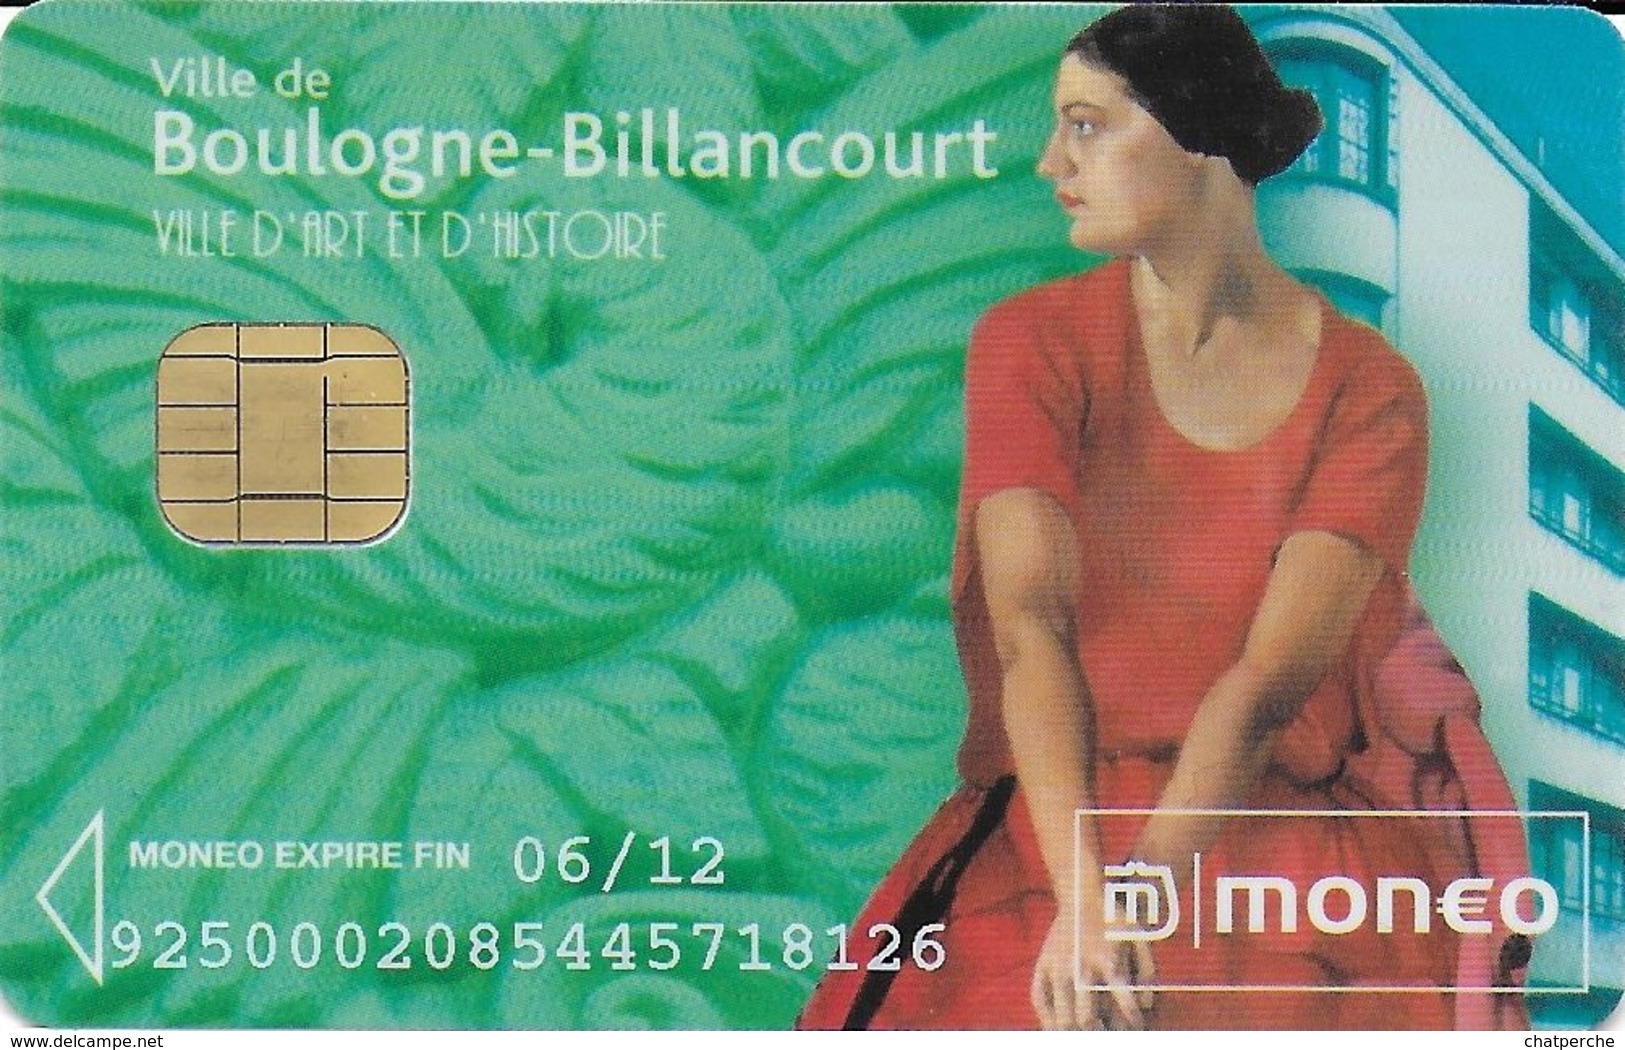 CARTE A PUCE CHIP CARD MONEO STATIONNEMENT BOULOGNE-BILLANCOURT TRACES USAGE MAIS TTB - Monéo